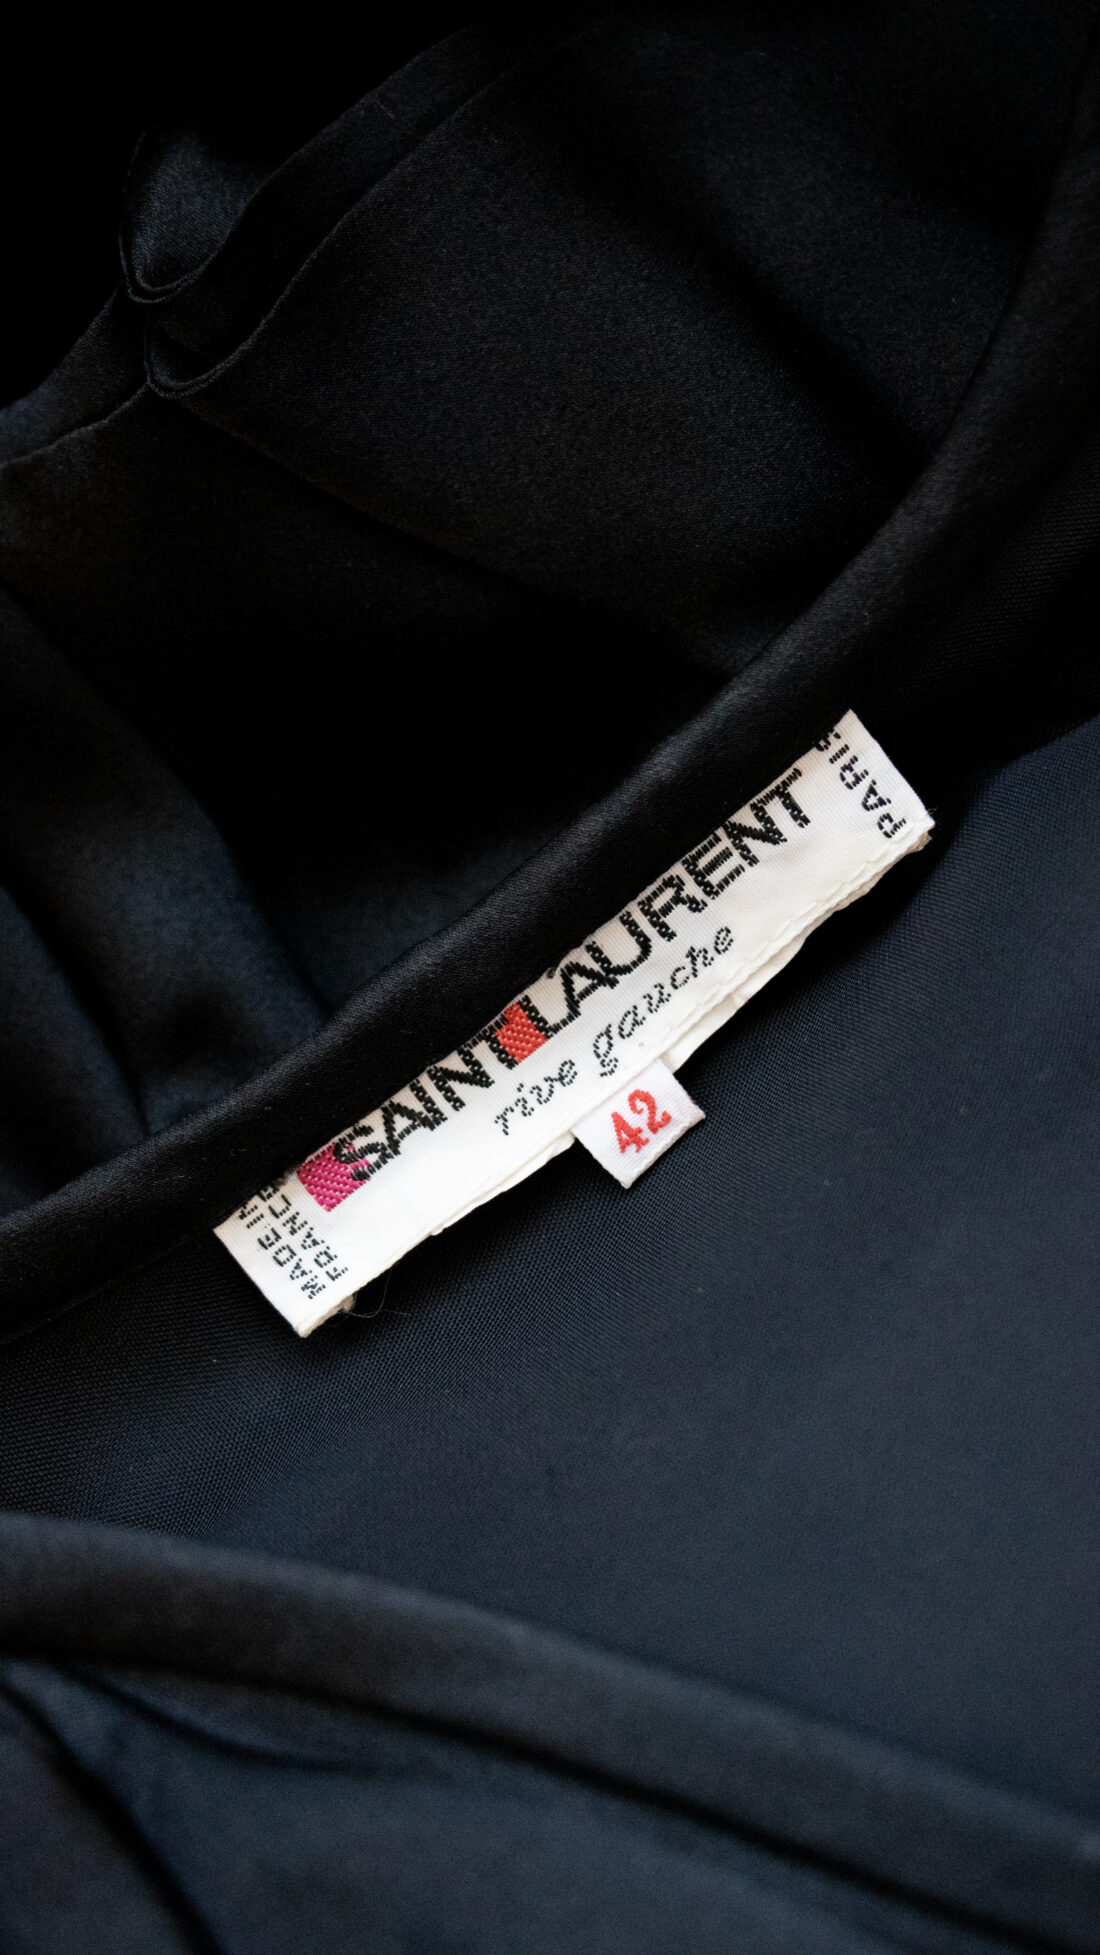 Saint Laurent Rive Gauche Black Dress